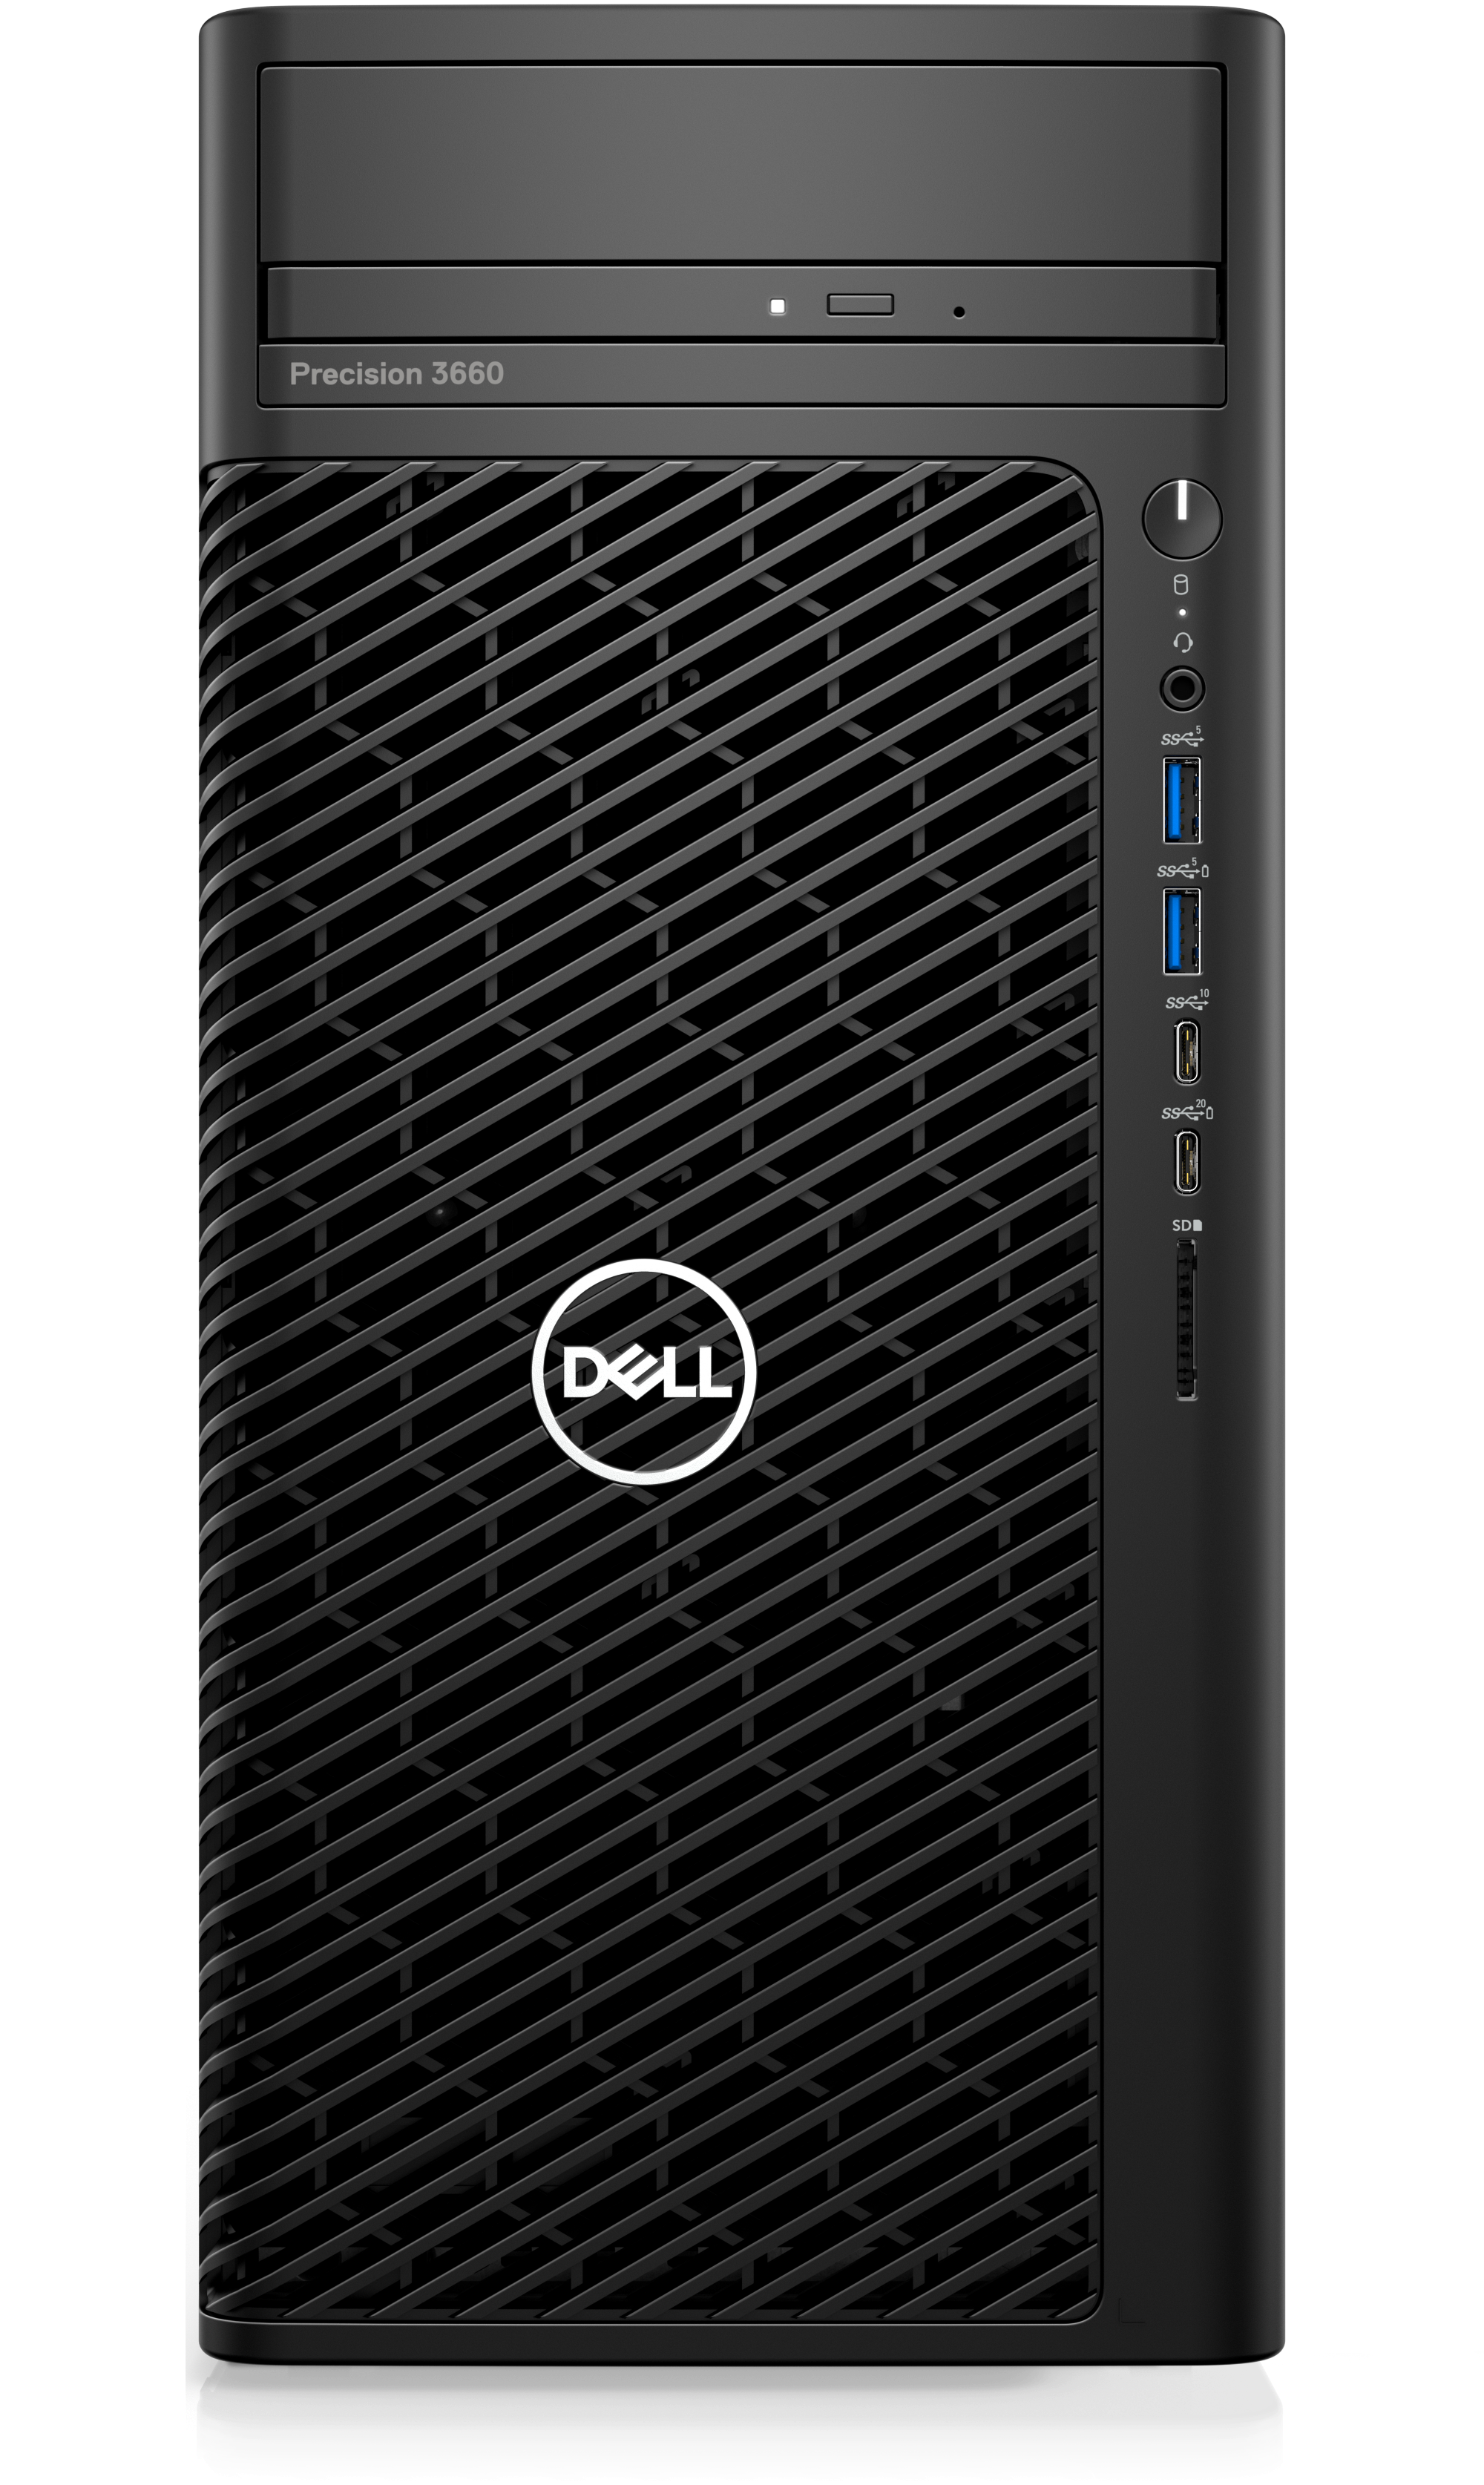 Dell  Precision 3660 Desktop, Intel Core i7-12700 12 core 25MB cache,  8GB RAM, 1TB, No Monitor, DVDRW, 3 Years warranty, Windows 10 Pro